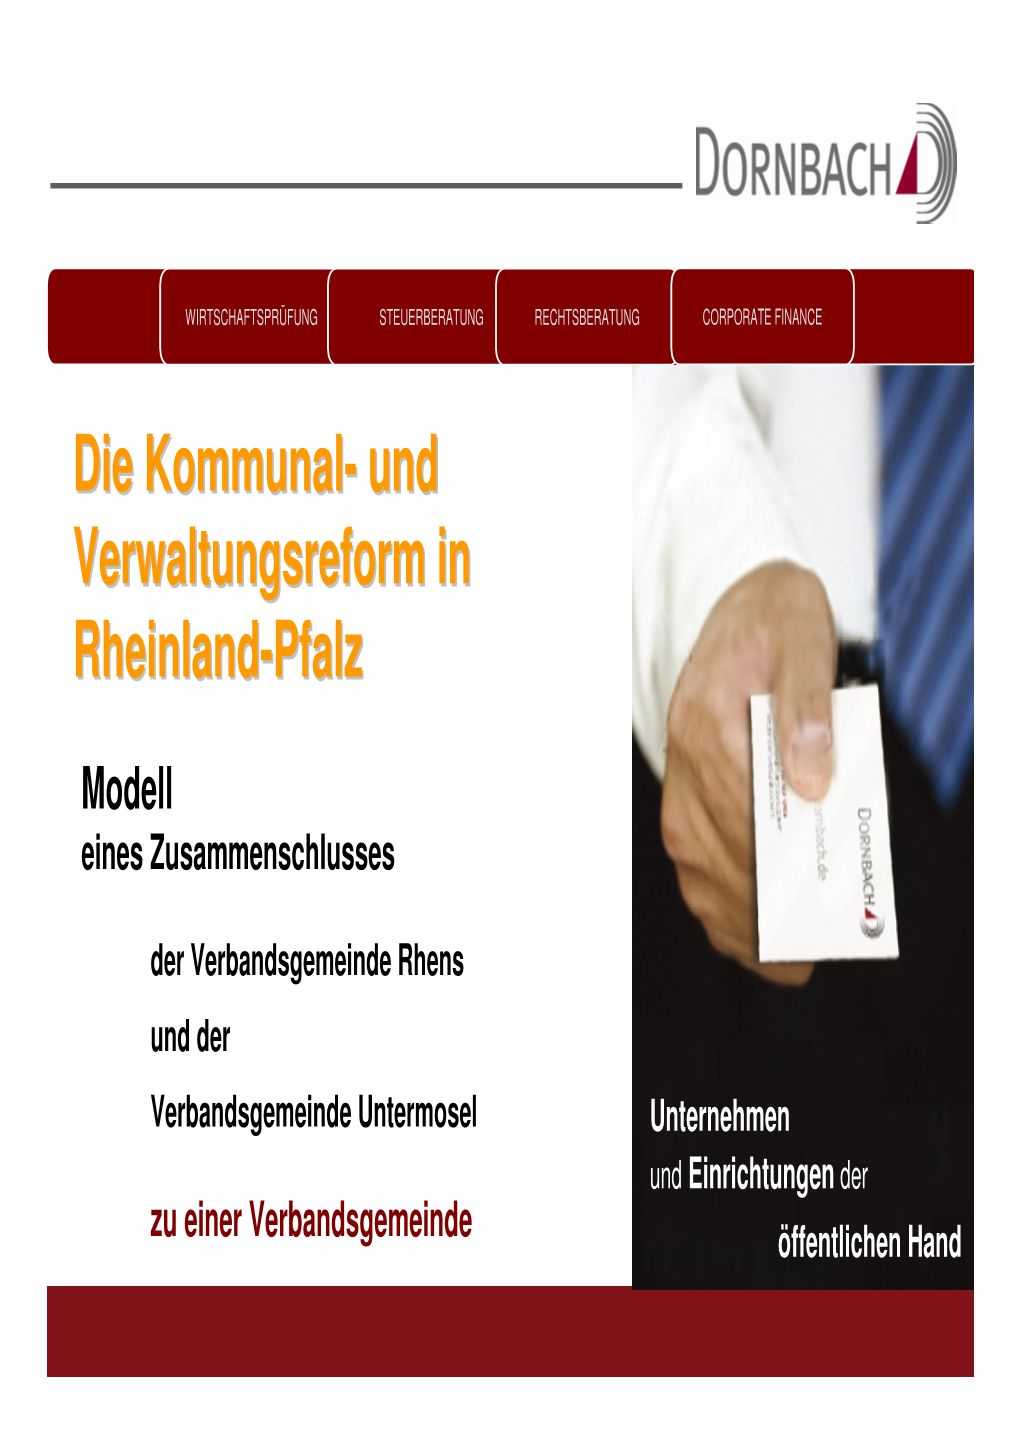 Verbandsgemeinde Rhens Und Der Verbandsgemeinde Untermosel Unternehmen Und Einrichtungen Der Zu Einer Verbandsgemeinde Öffentlichen Hand